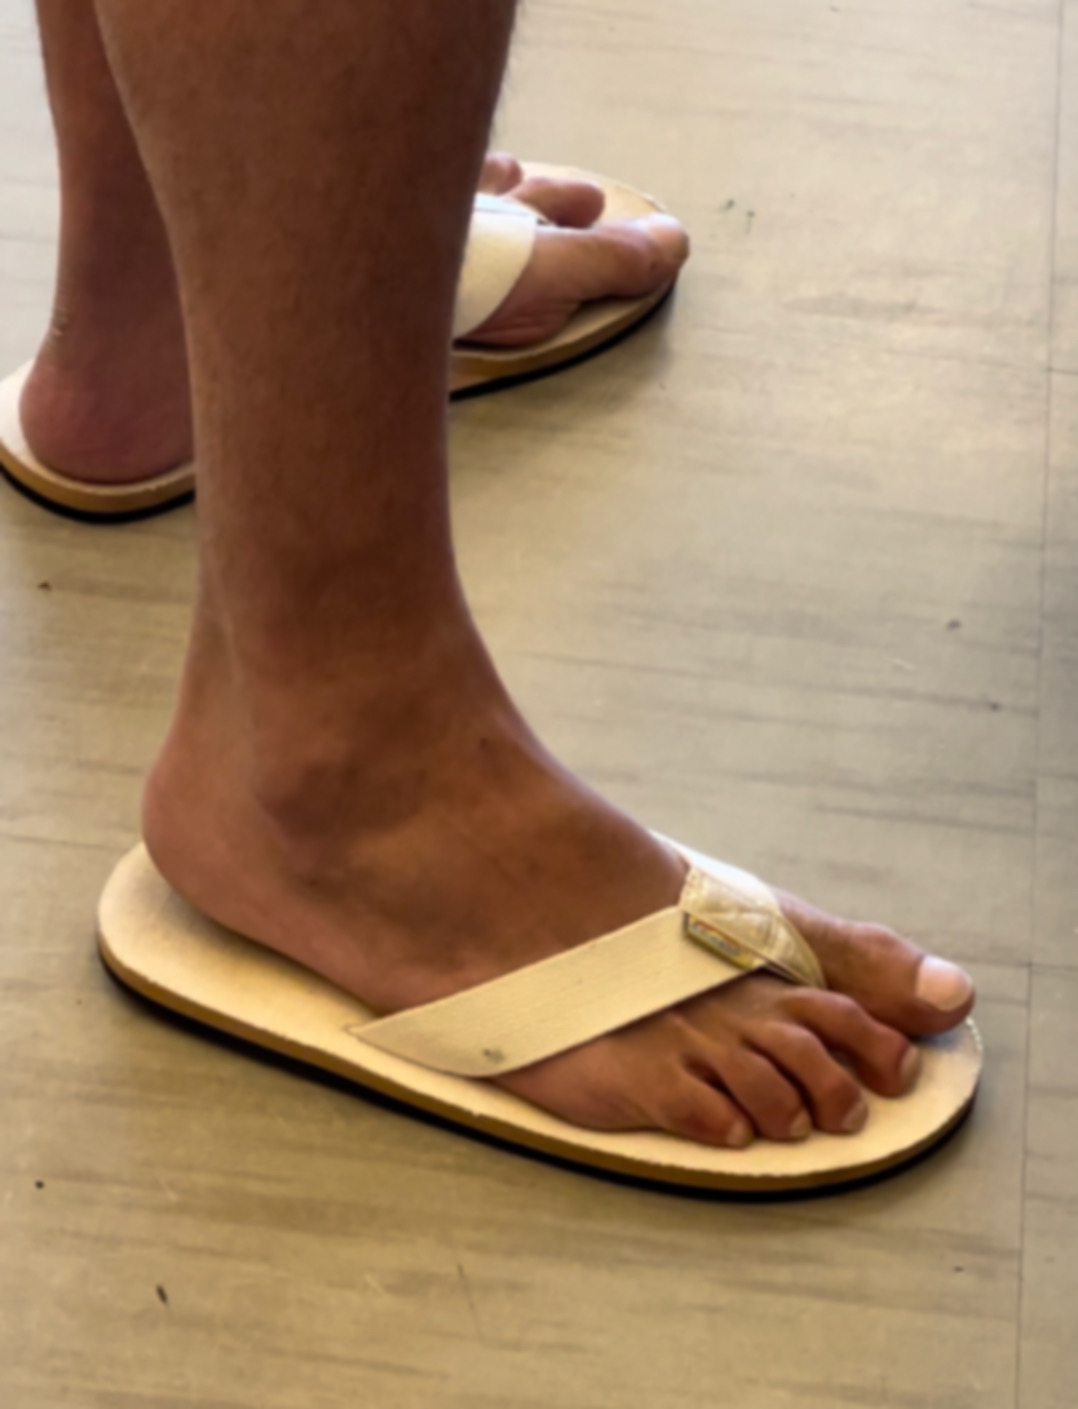 Sexy feet in flip flops